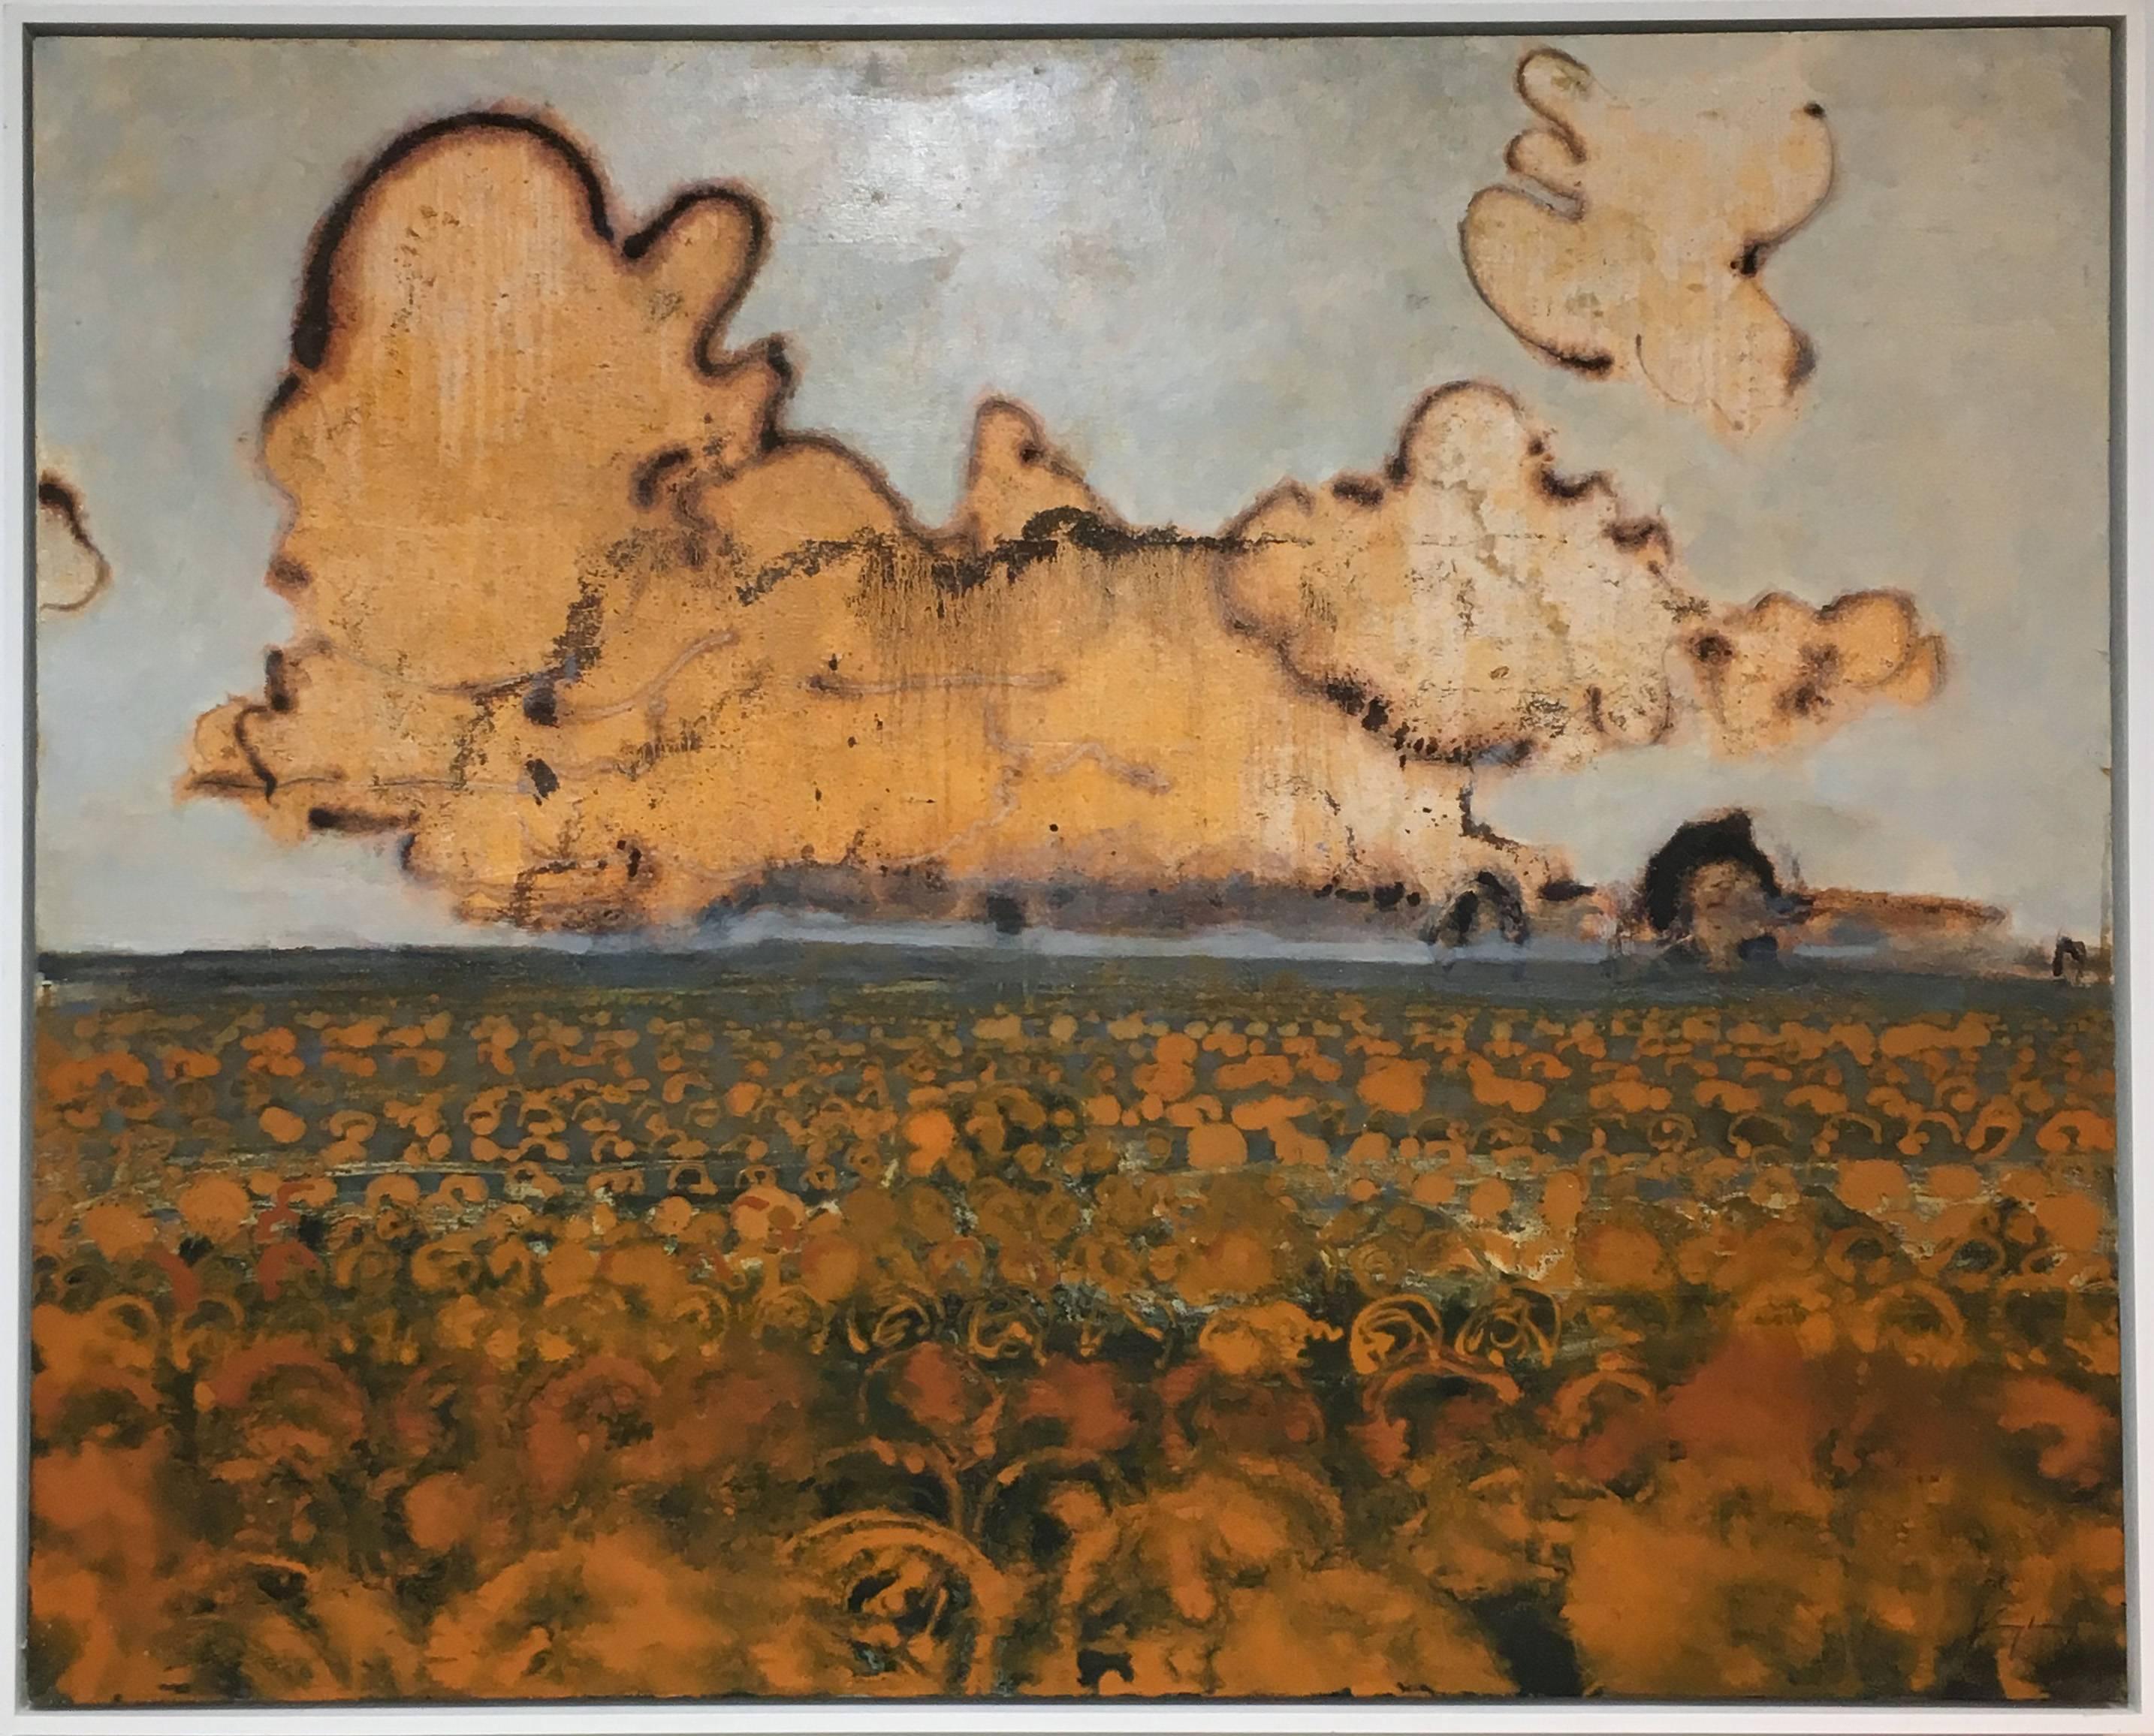 Peinture contemporaine de paysage de la vallée de l'Hudson - Peinture - Peinture de citrouille - Marron Figurative Painting par David Konigsberg